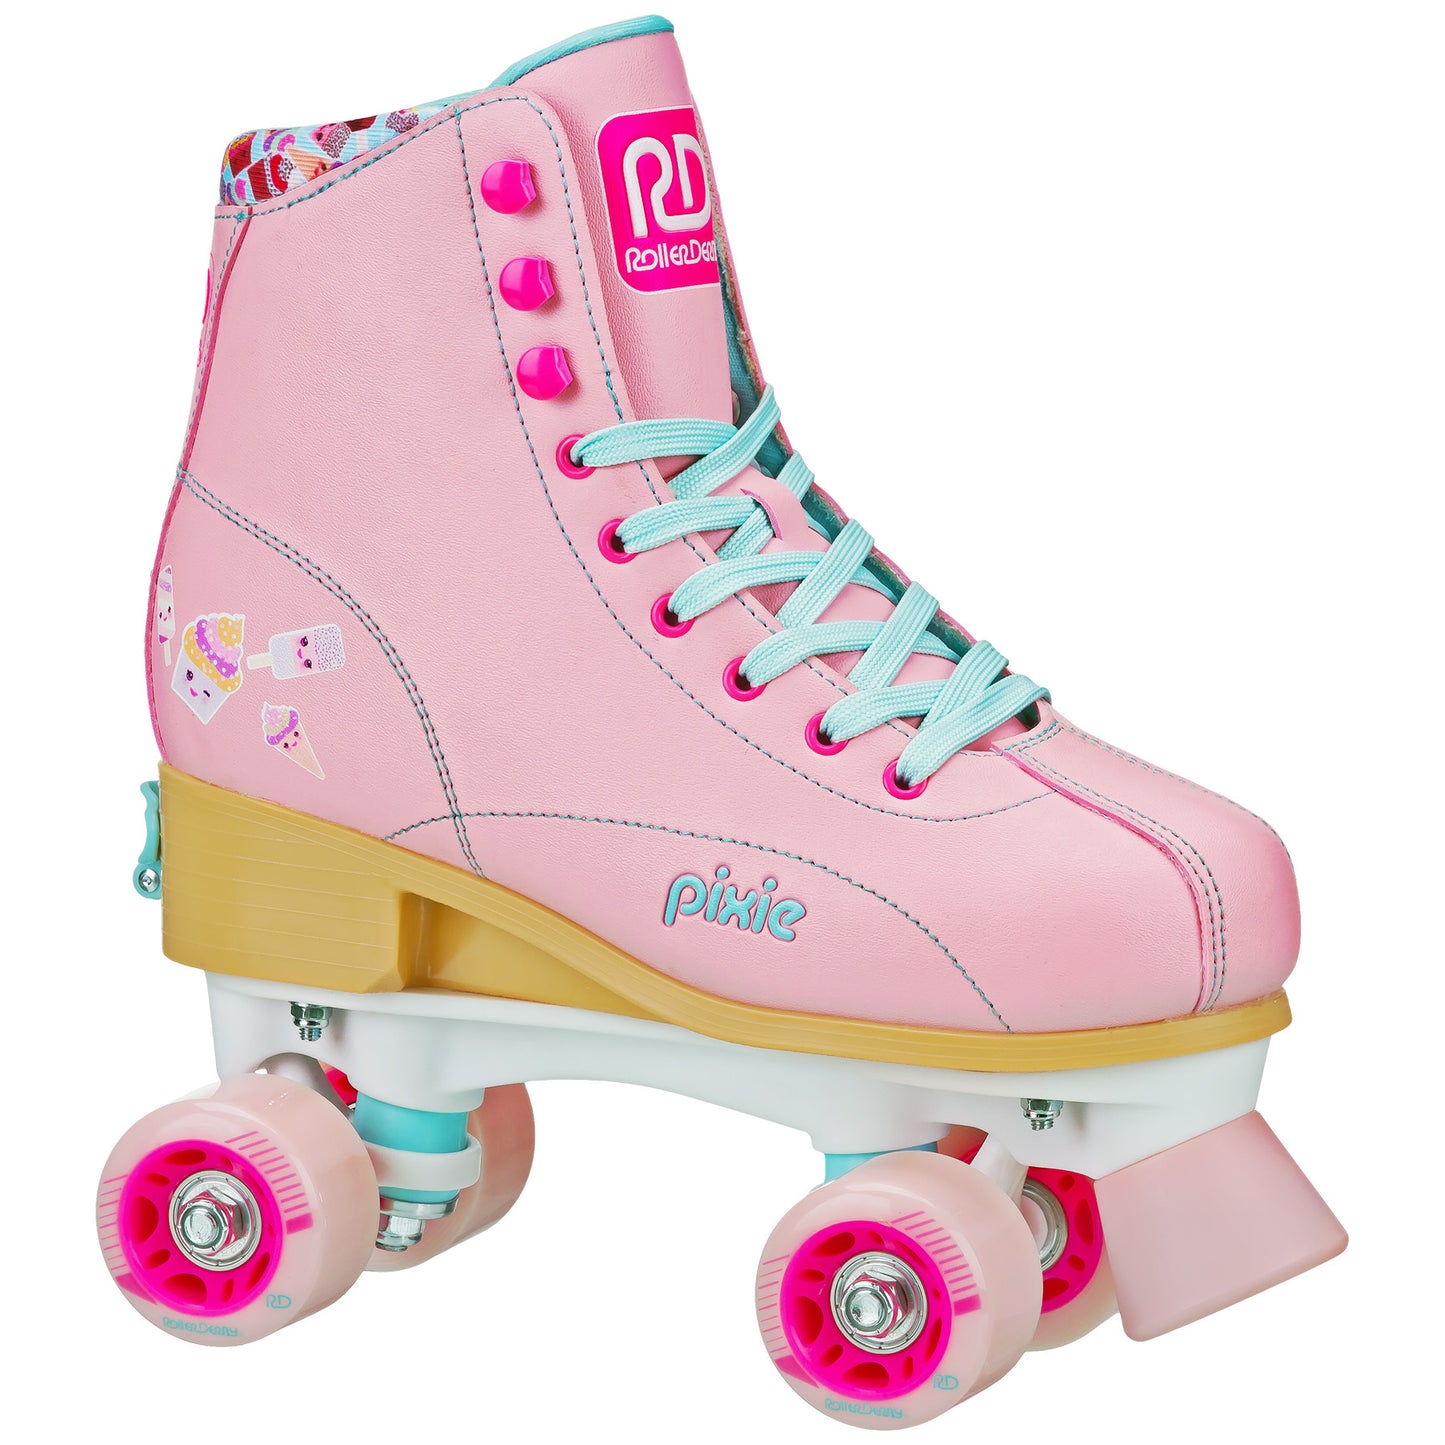 Pixie Cake Adjustable Girl's Roller Skates